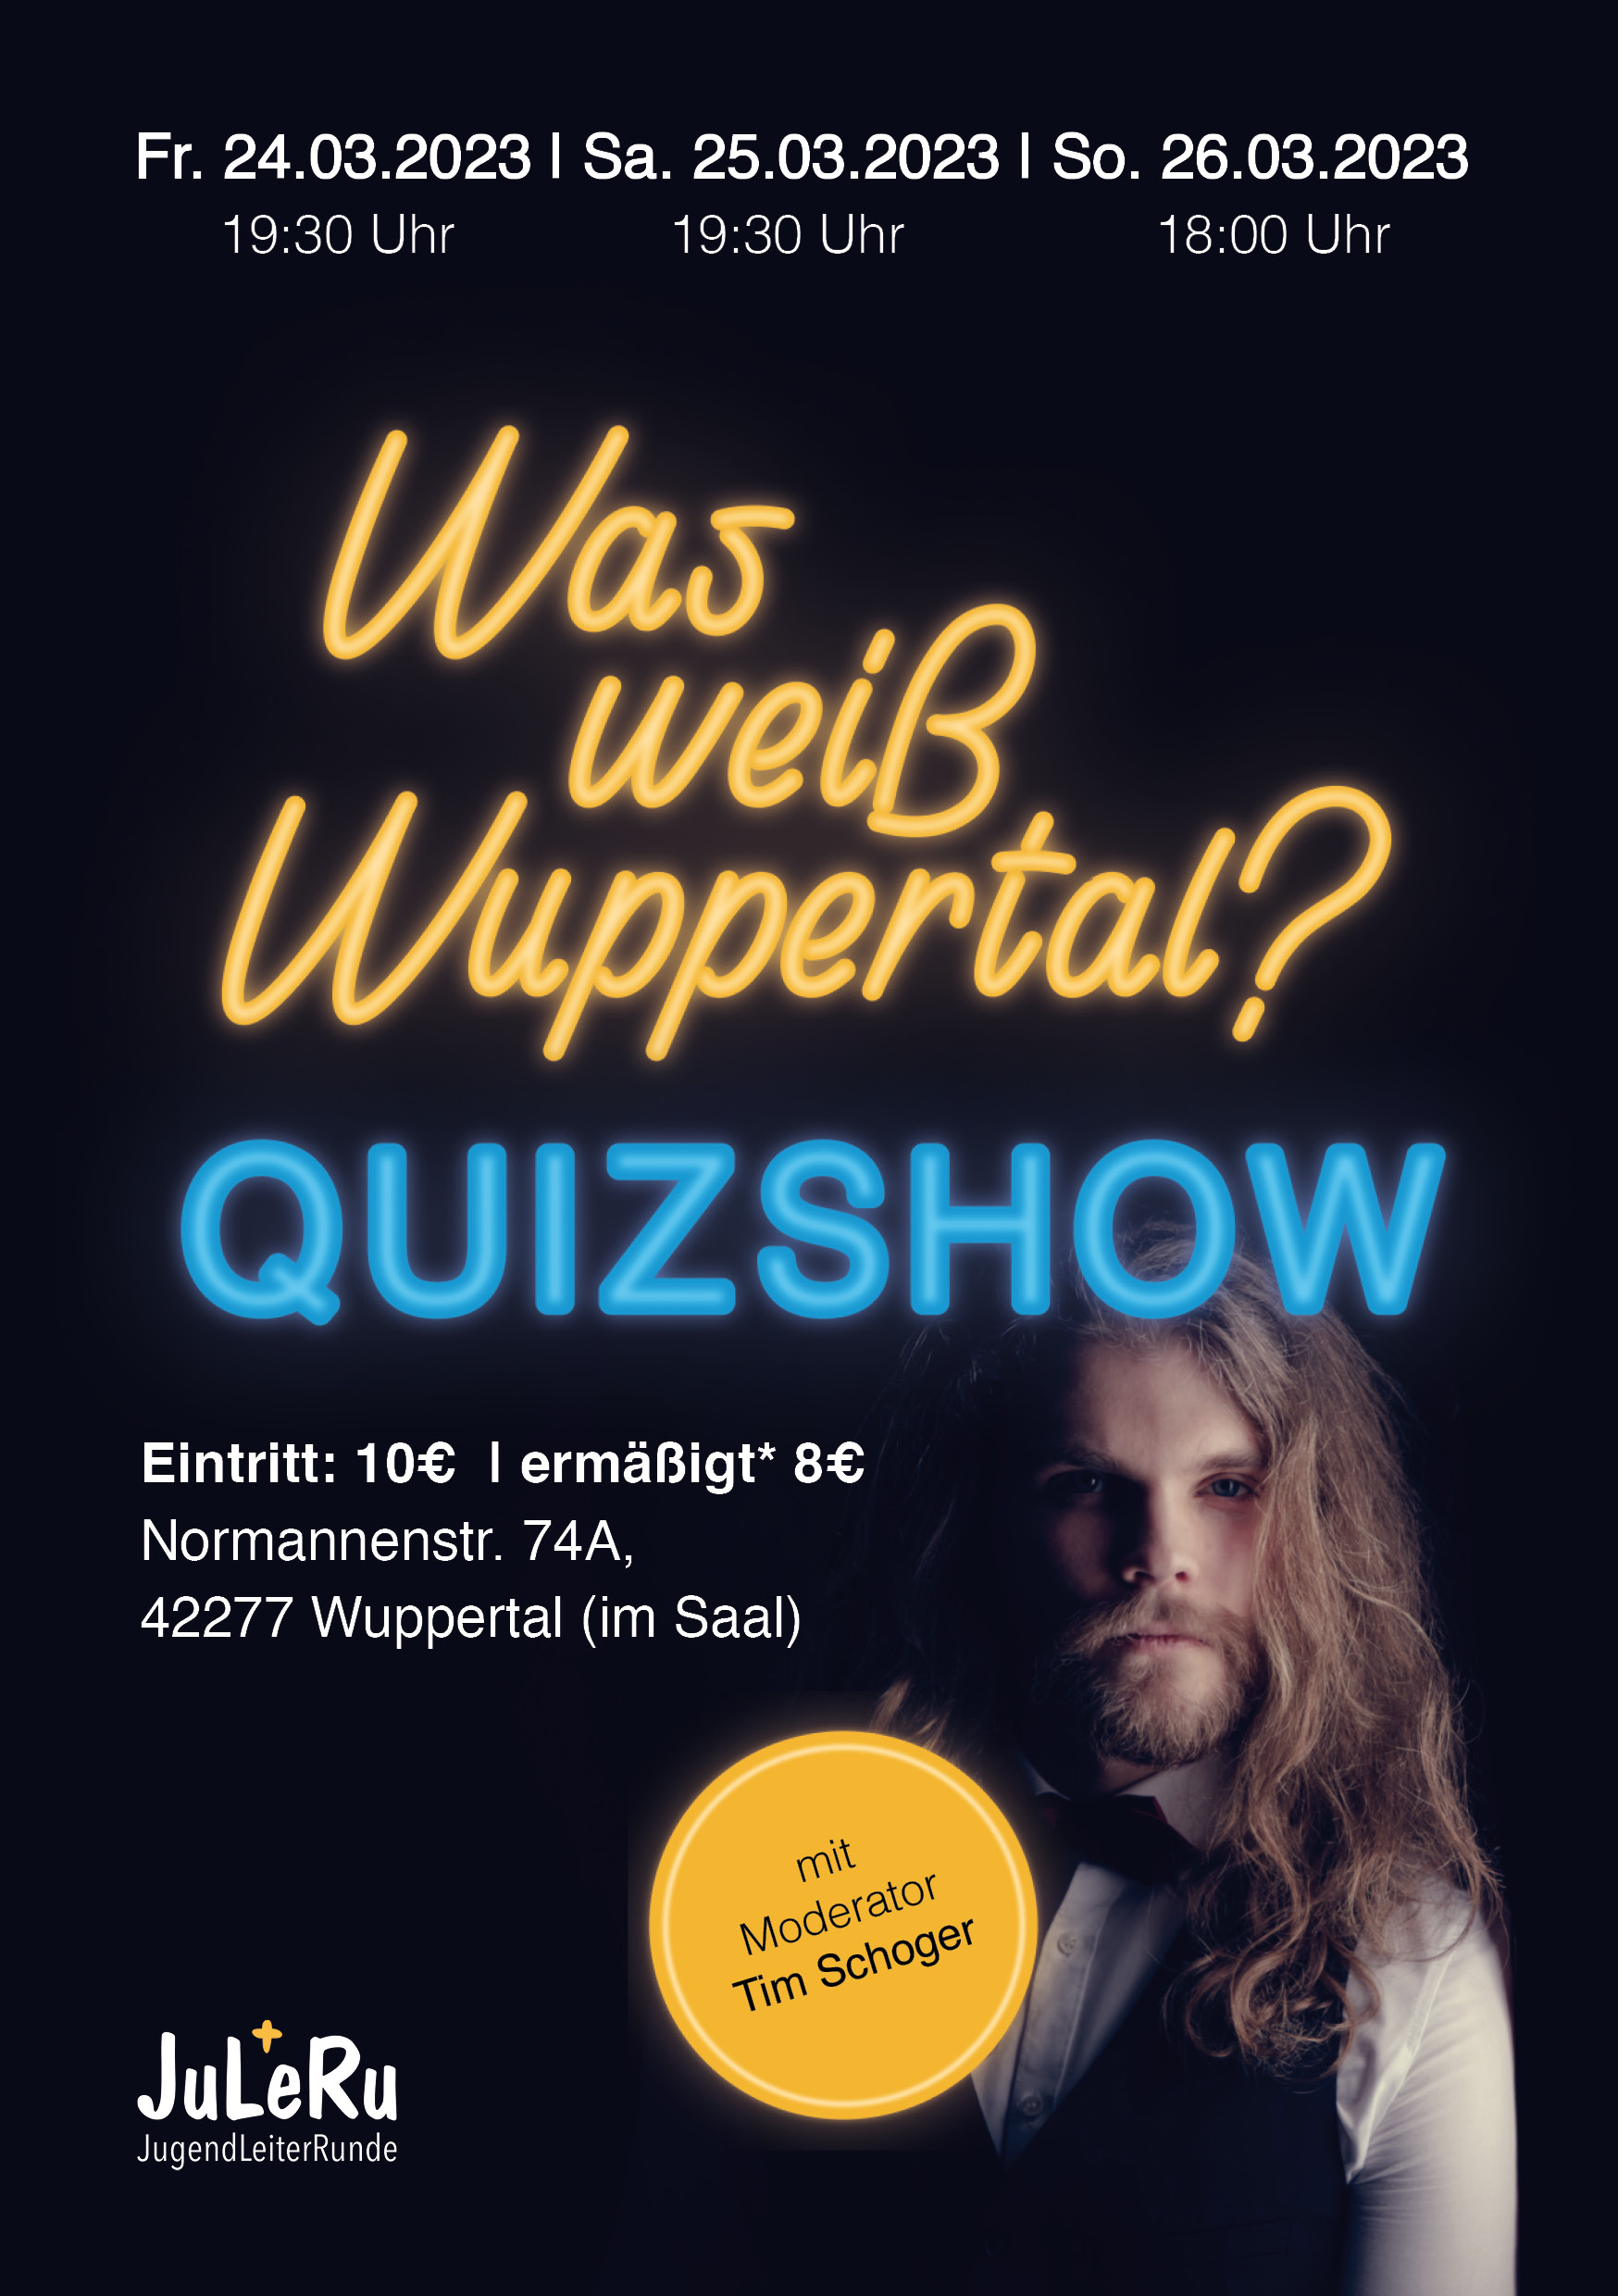 Was weiß Wuppertal? Quizshow